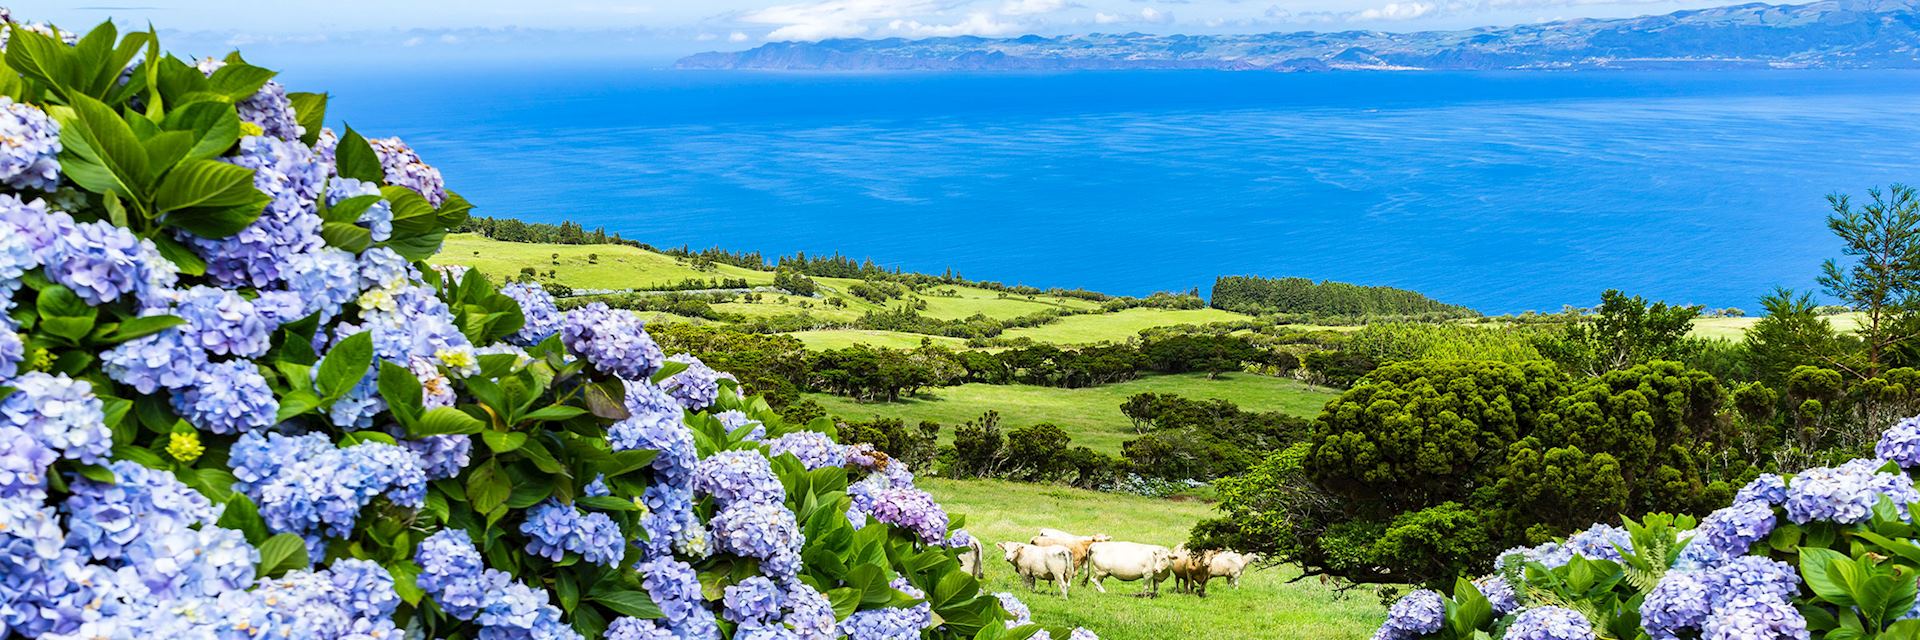 Pico Island, Azores